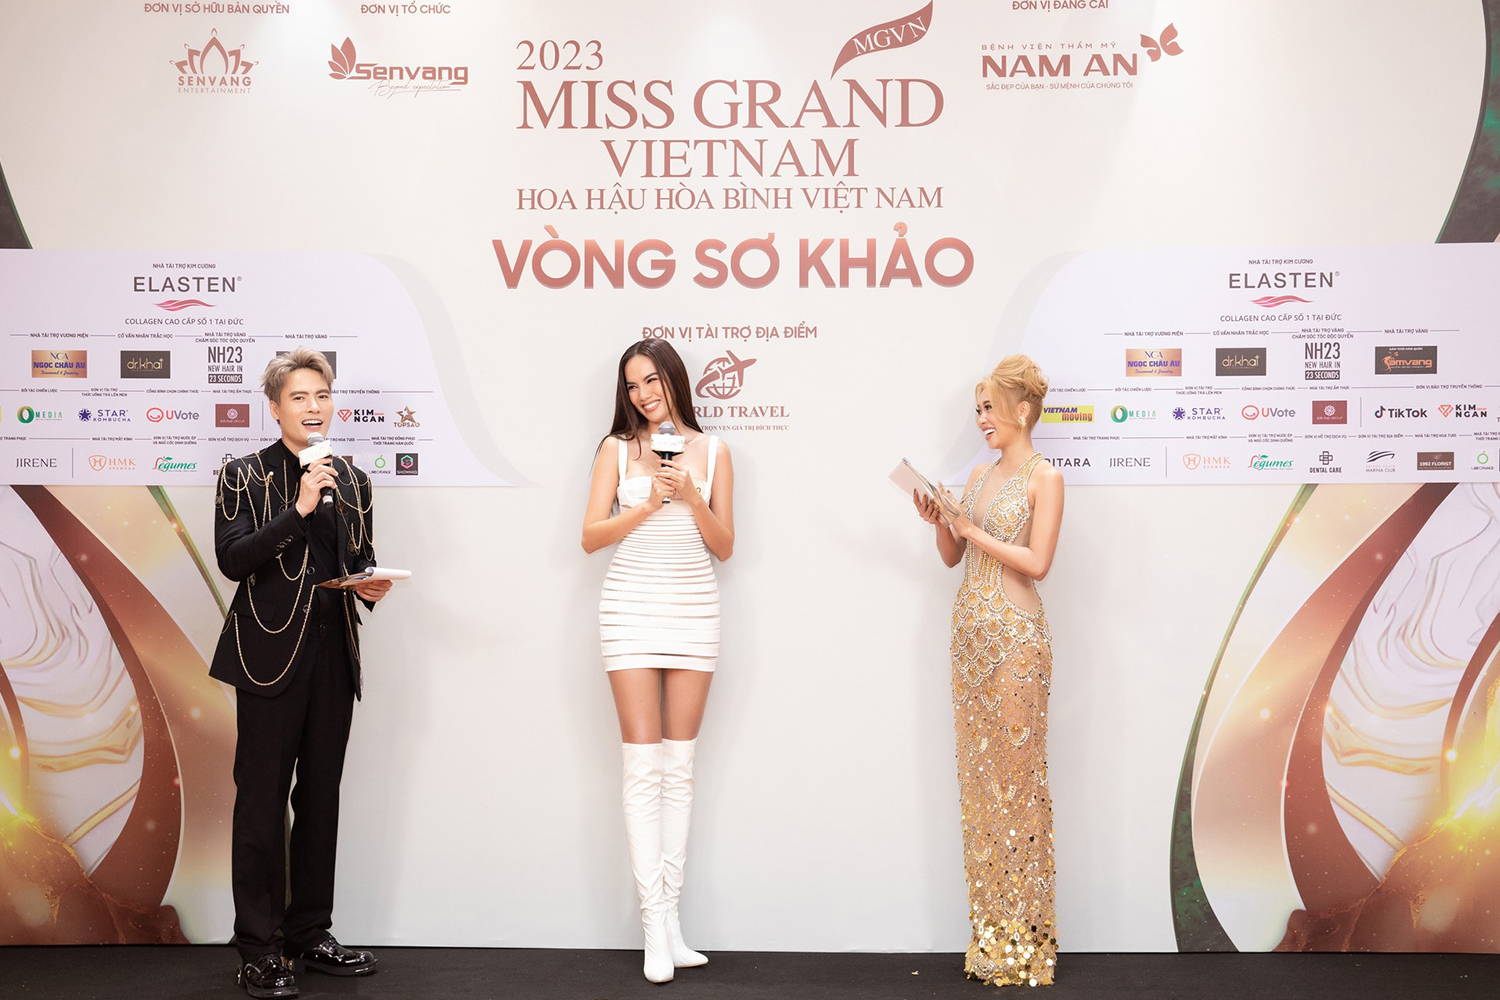 Harper's Bazaar_Nguyên Thảo tại thảm đỏ Miss Grand Vietnam 2023 _04